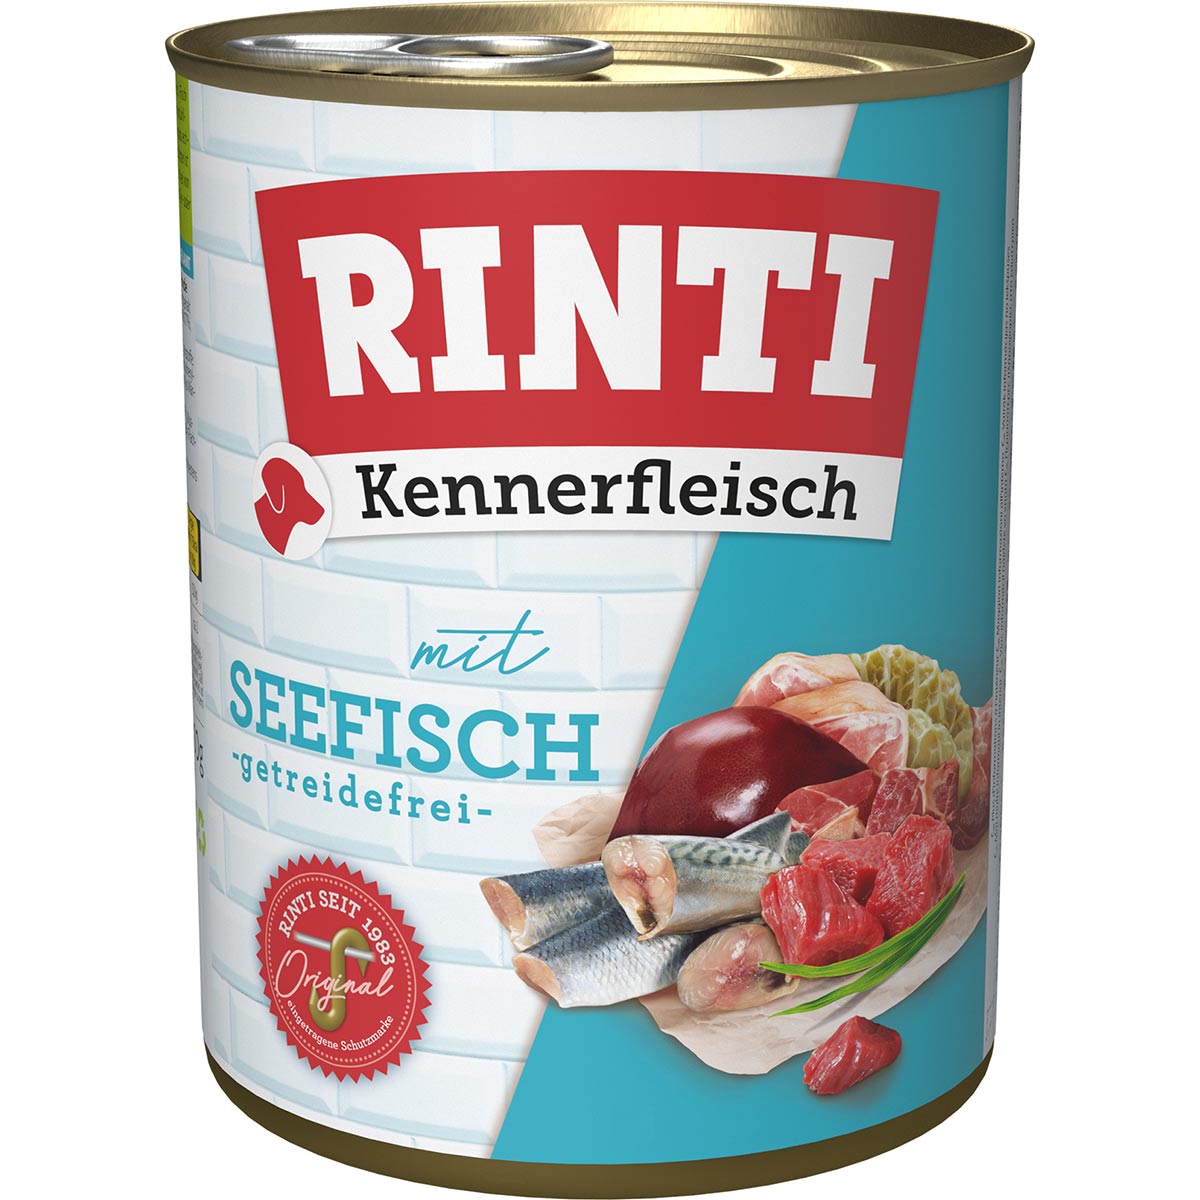 RINTI Kennerfleisch Seefisch 12x800g von Rinti